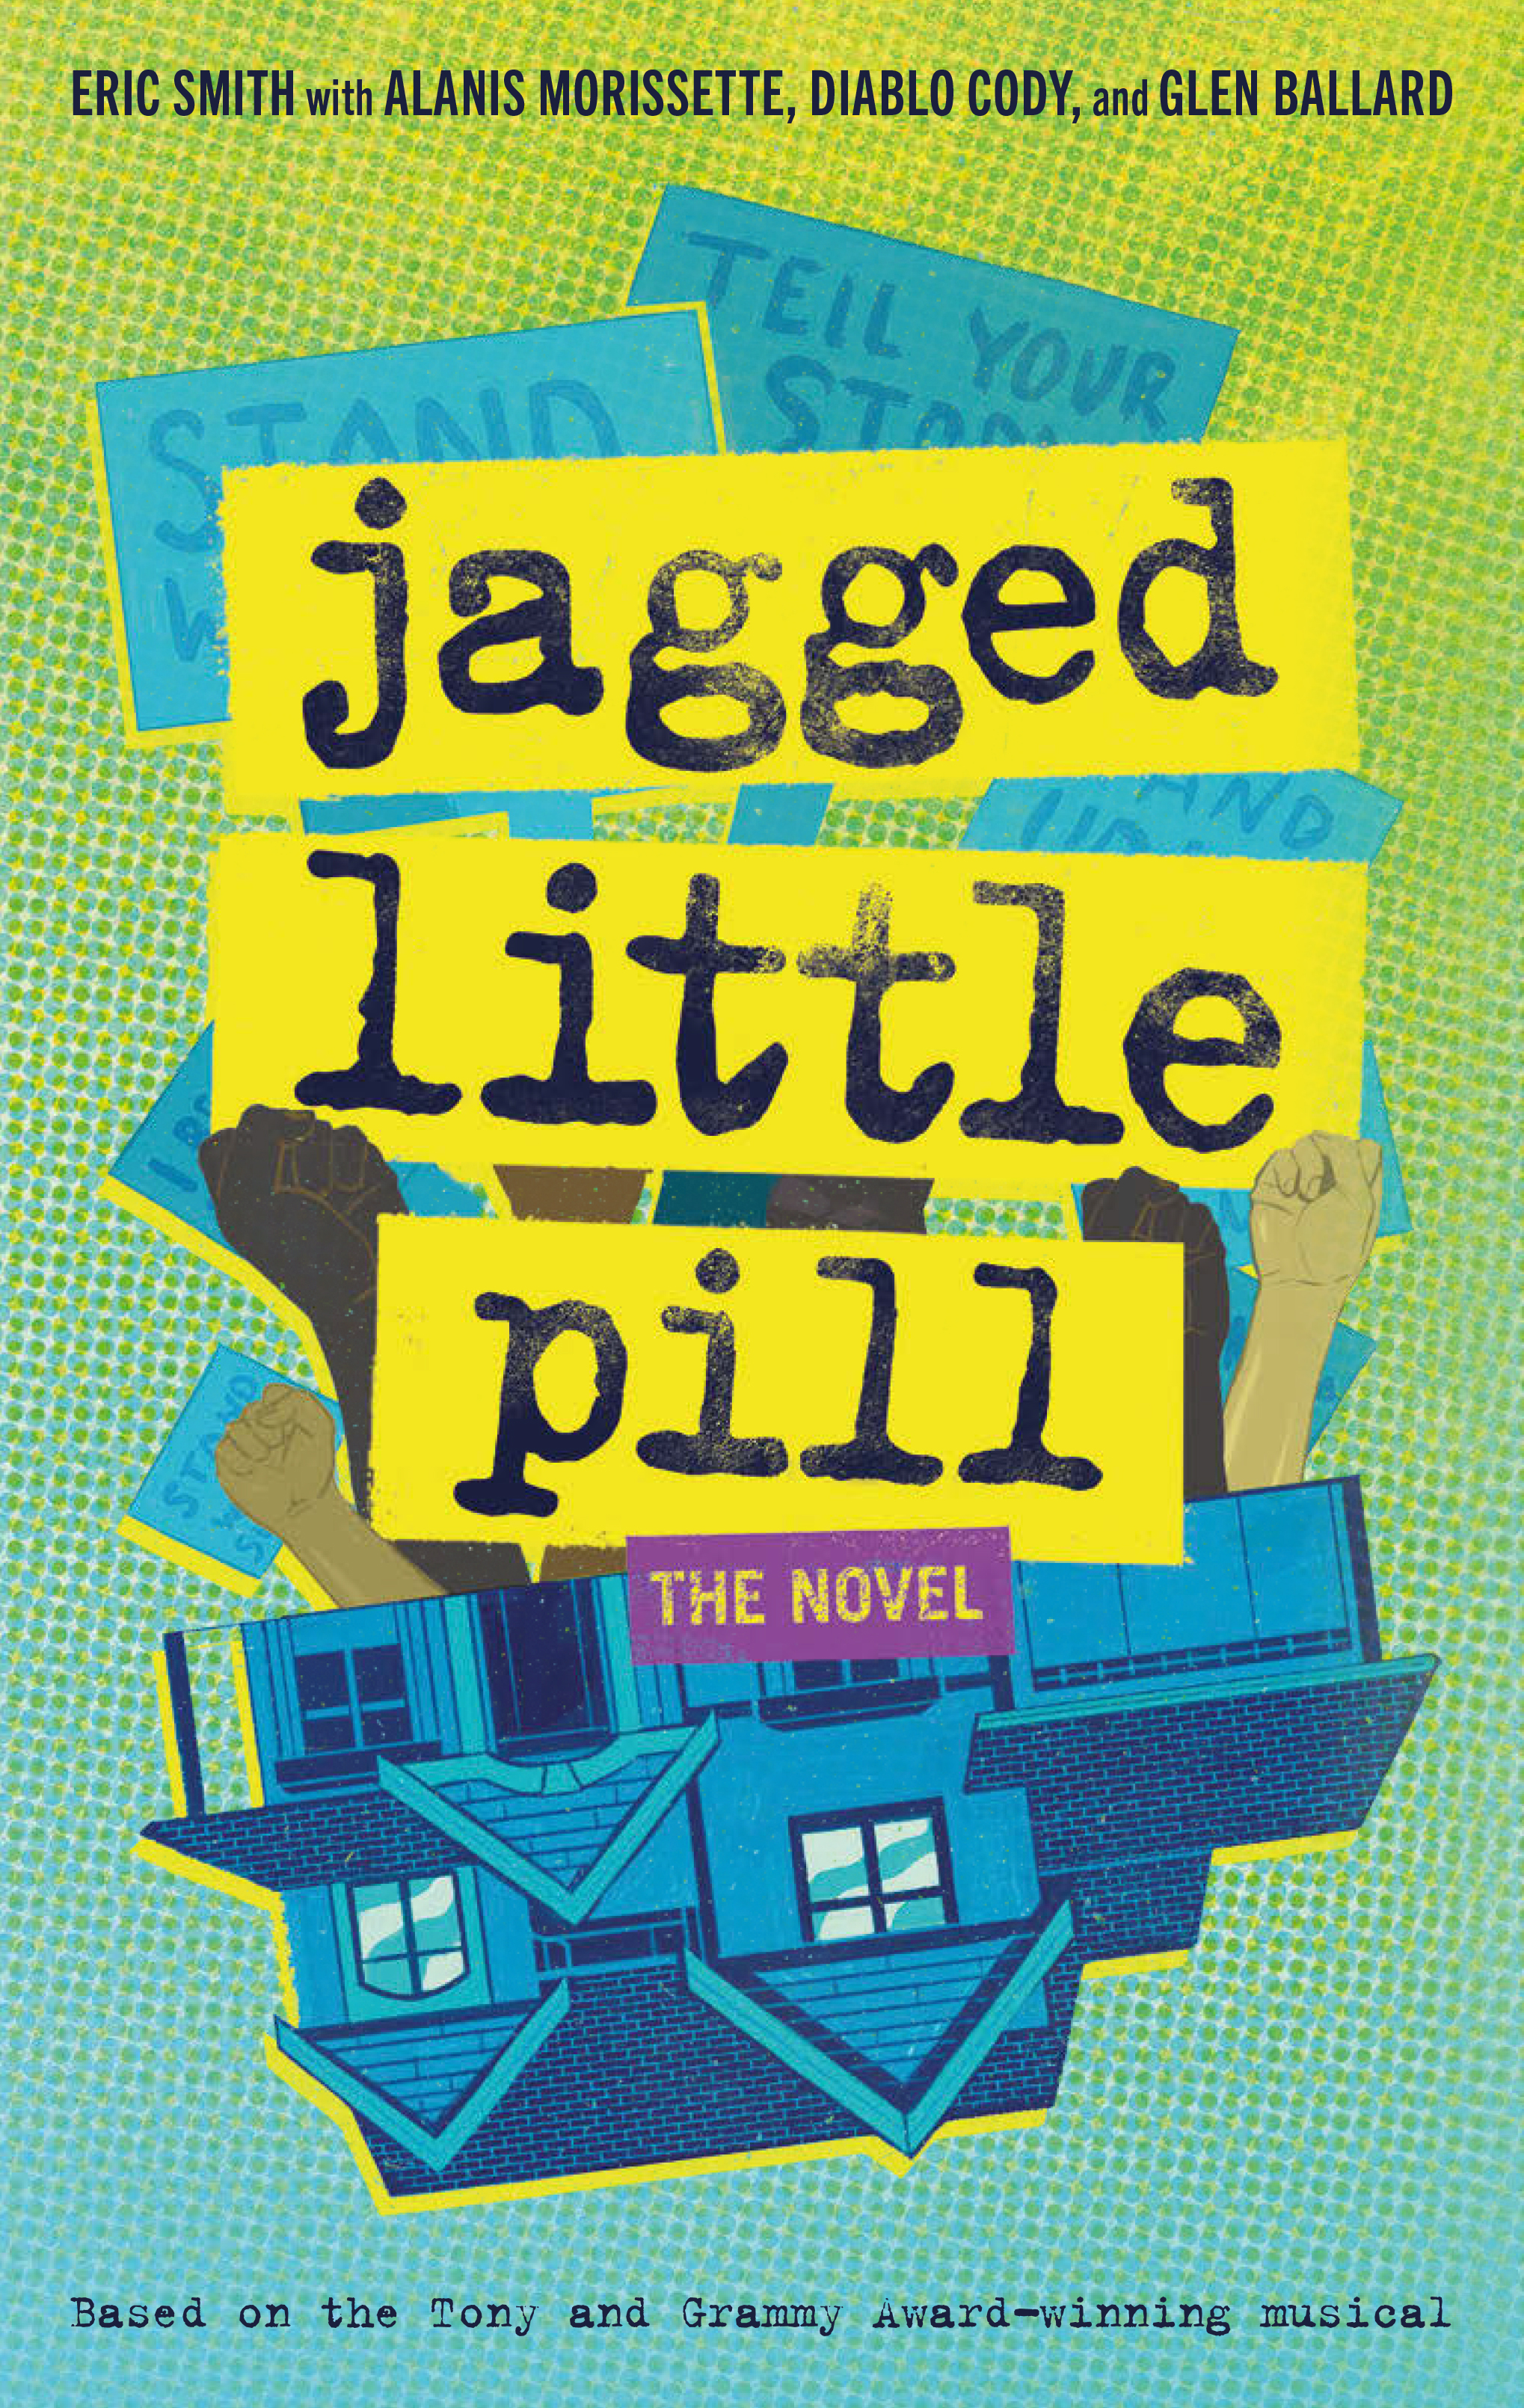 Jagged little pill : the novel